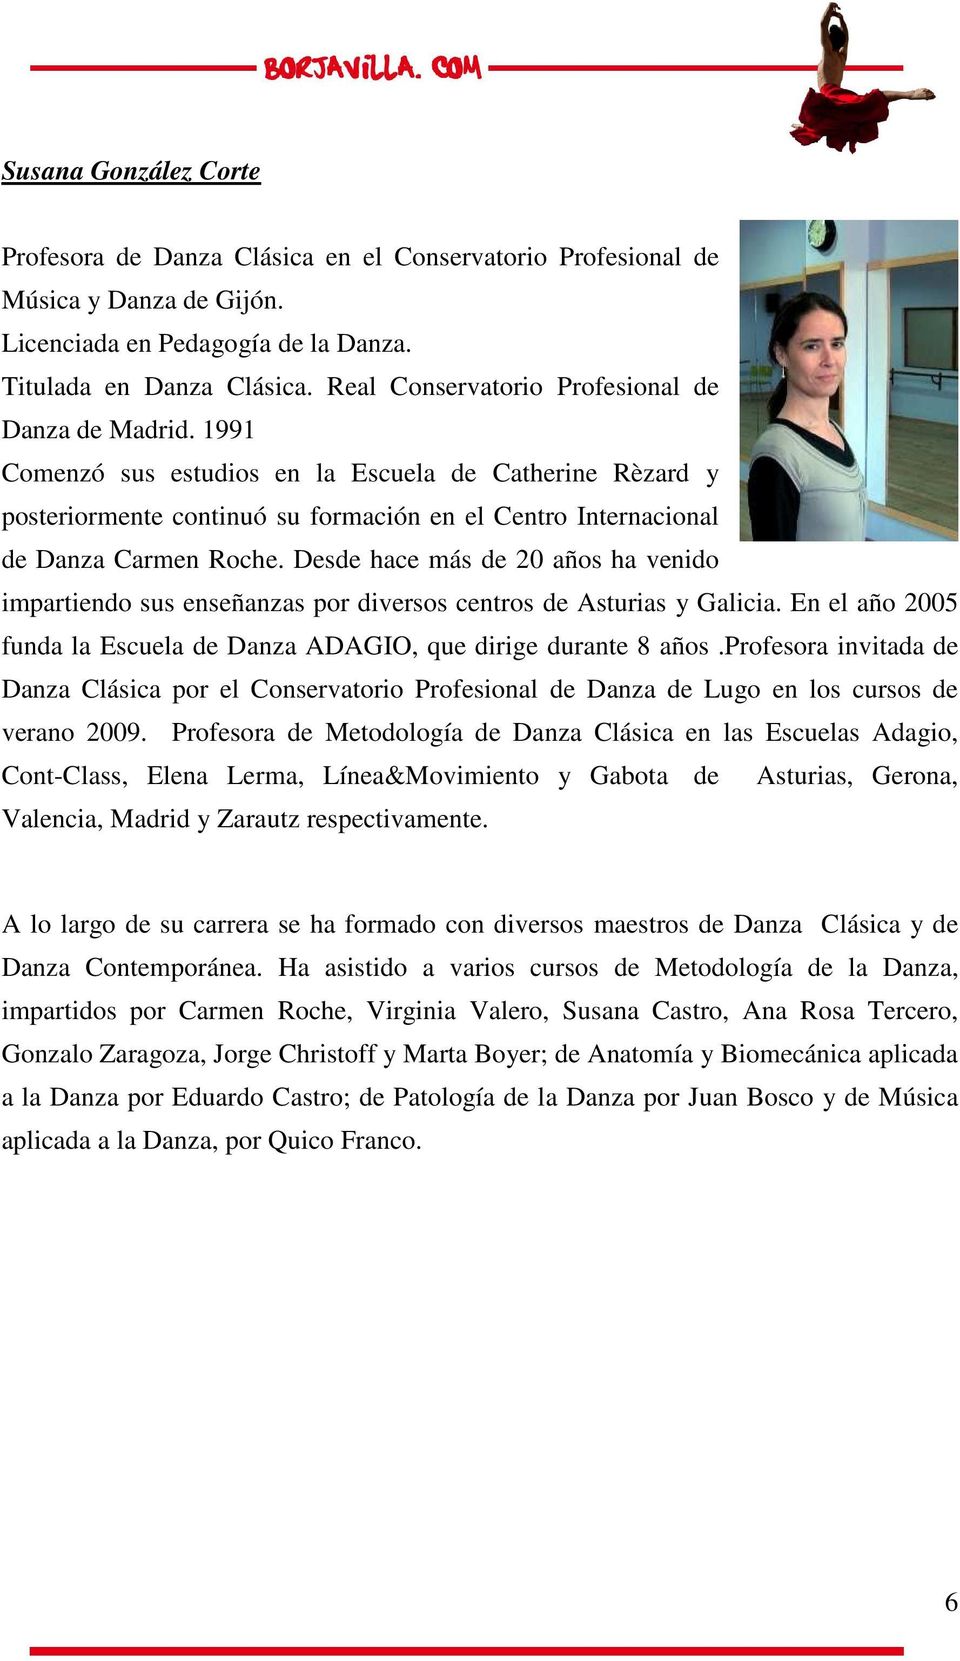 Desde hace más de 20 años ha venido impartiendo sus enseñanzas por diversos centros de Asturias y Galicia. En el año 2005 funda la Escuela de Danza ADAGIO, que dirige durante 8 años.